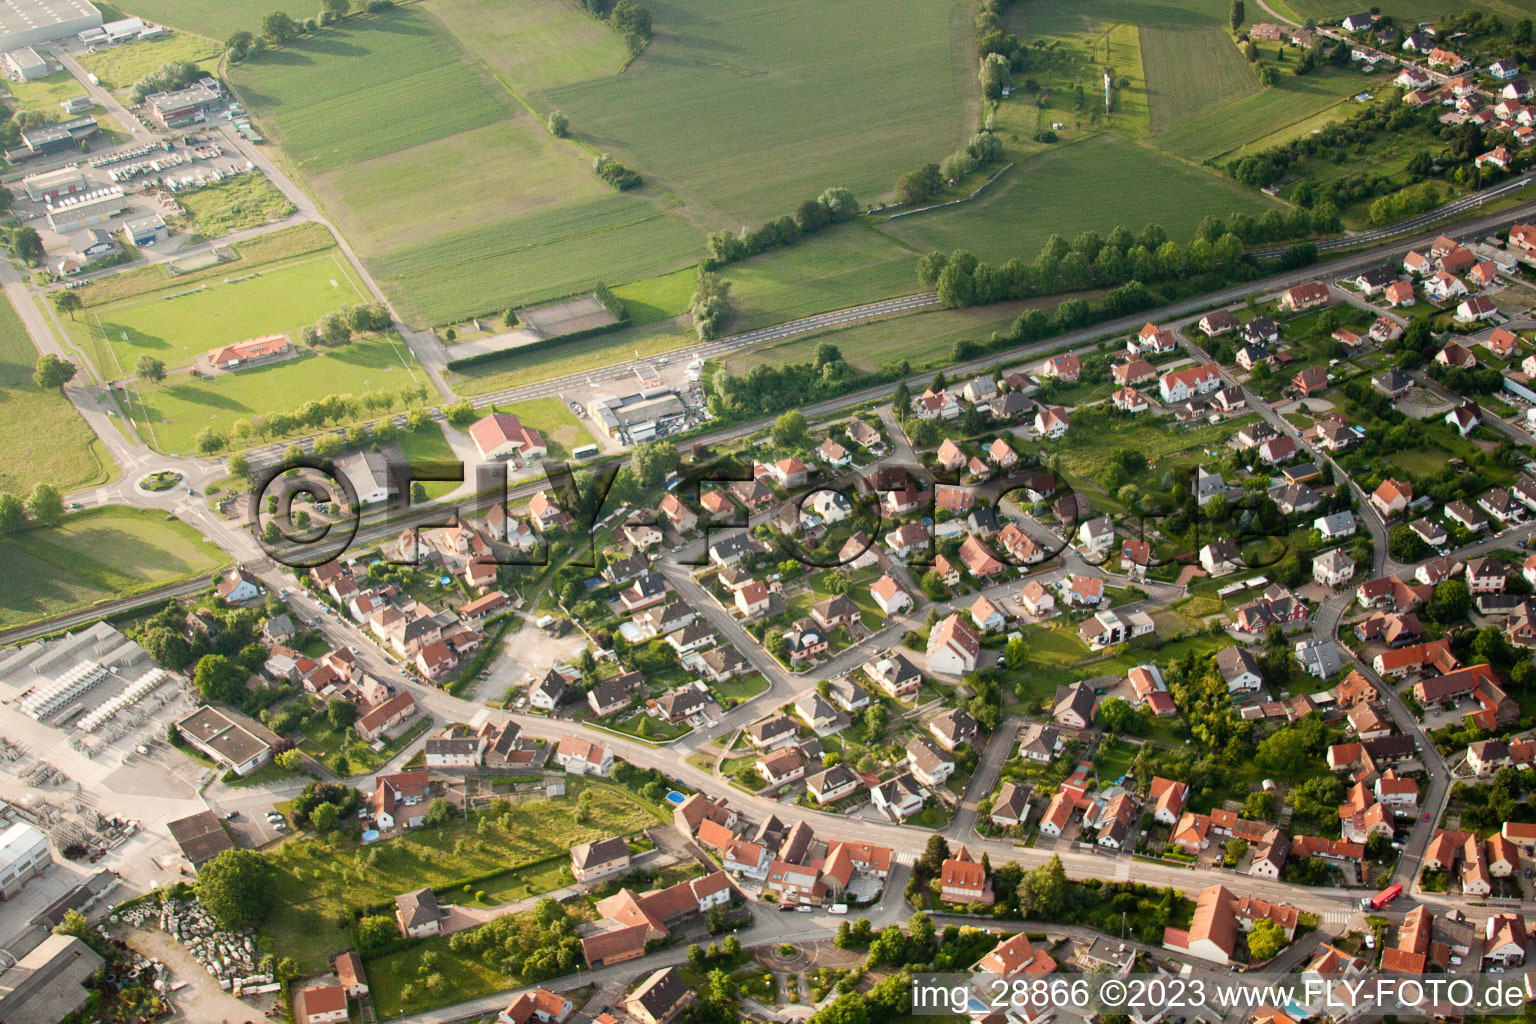 Kilstett im Bundesland Bas-Rhin, Frankreich von oben gesehen